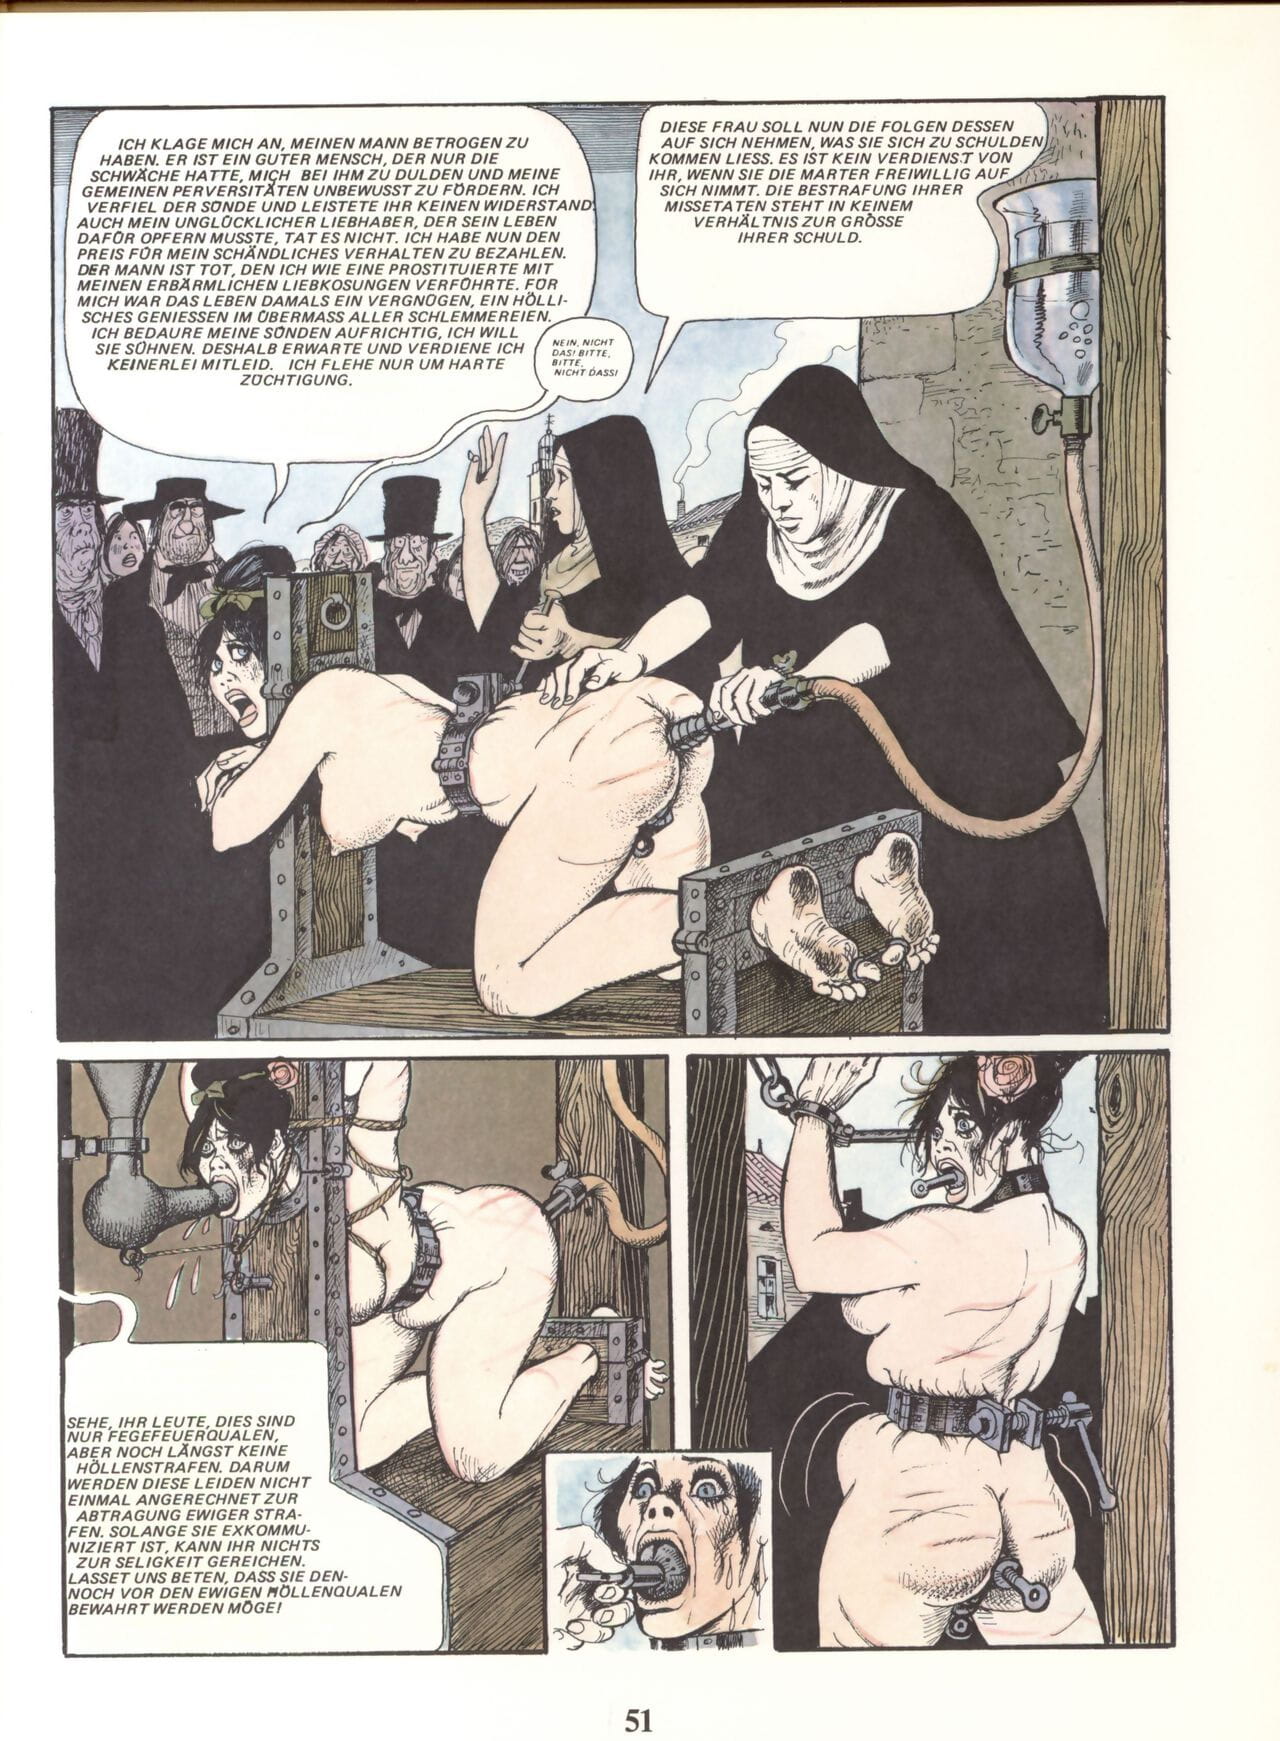 Marie Gabrielle De Saint eutrope #02 phần 3 page 1